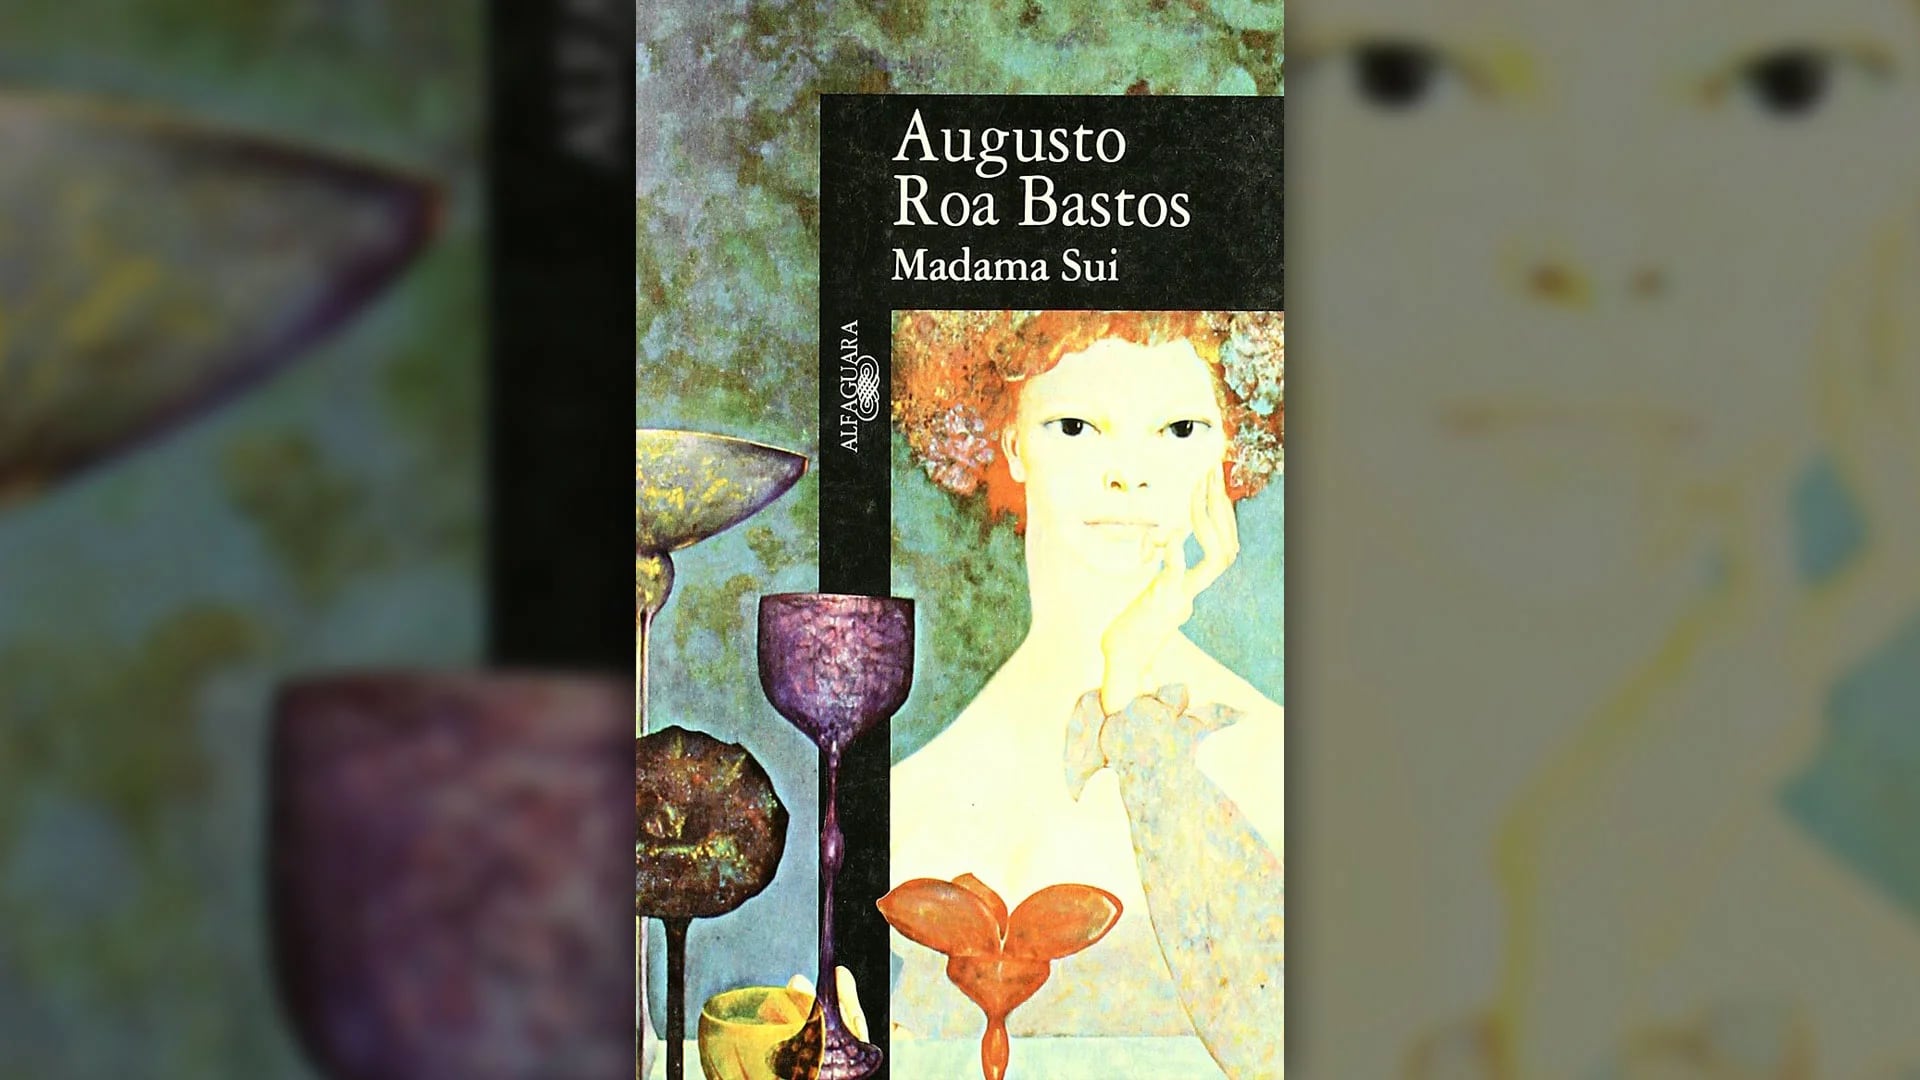 Tapa del libro “Madama Sui” de Augusto Roa Bastos